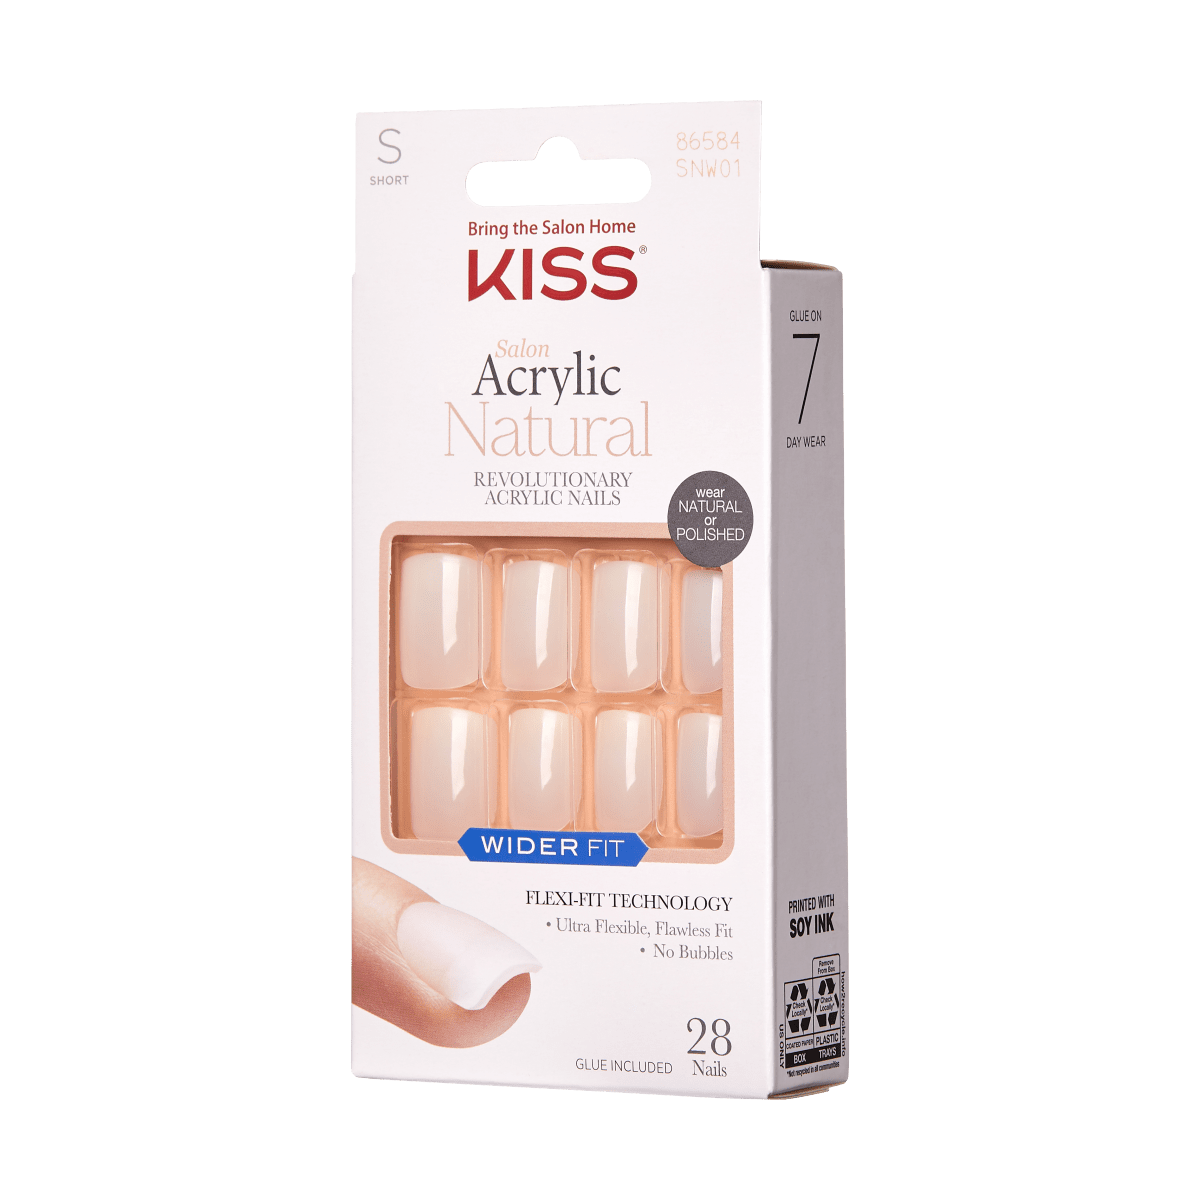 KISS SA Natural Nails - Rare, Wide Fit